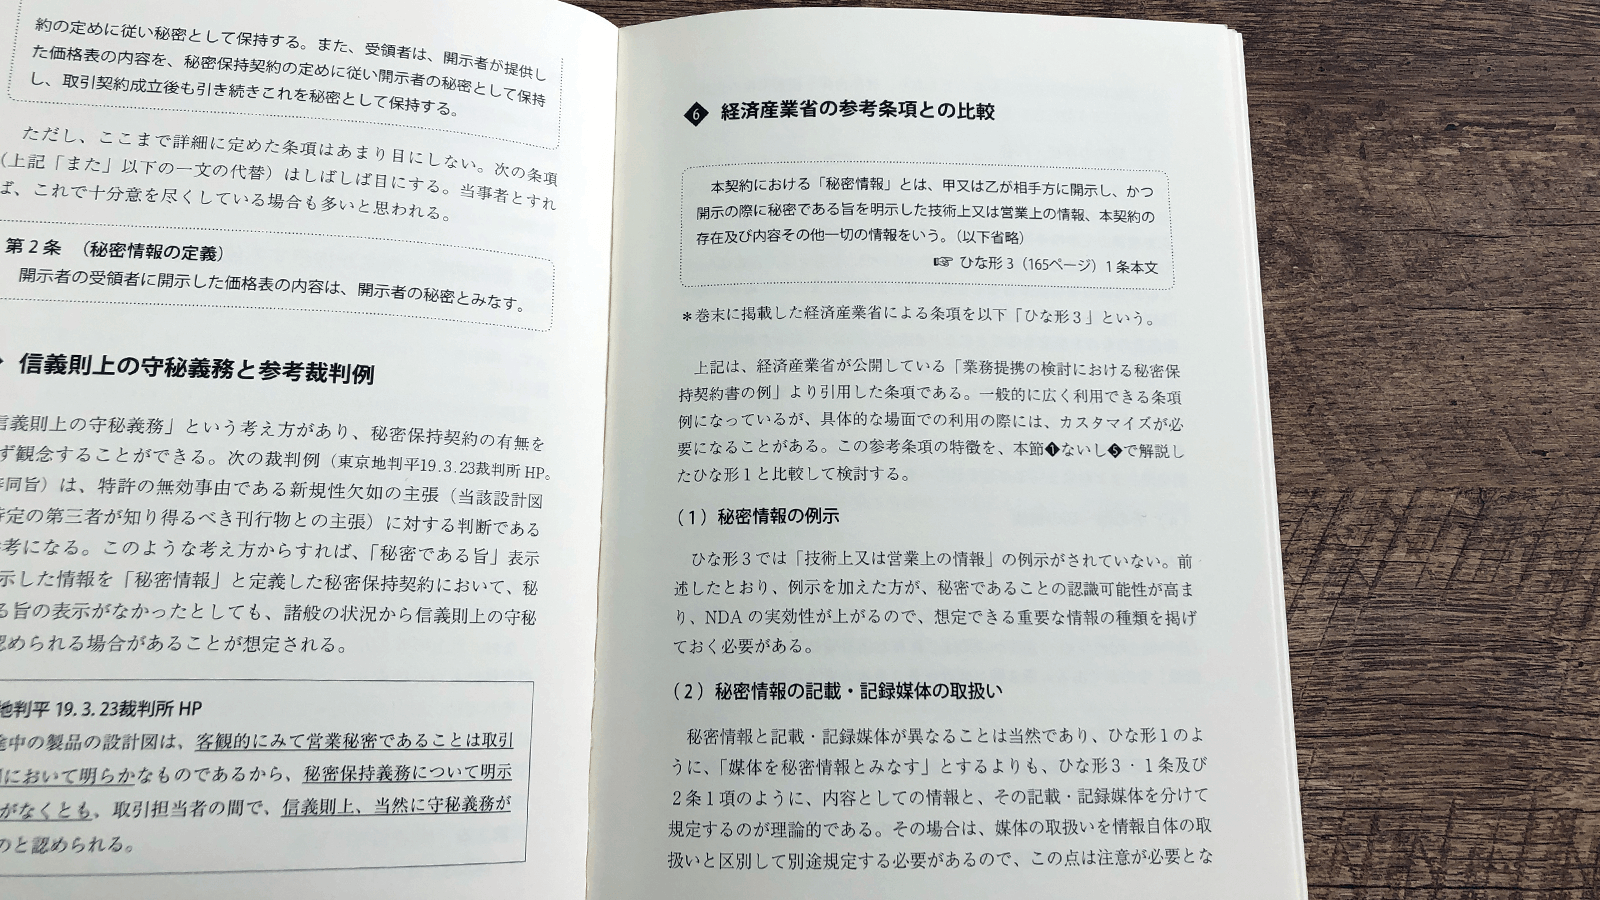 出澤総合法律事務所『実践!! 秘密保持契約書審査の実務』P39